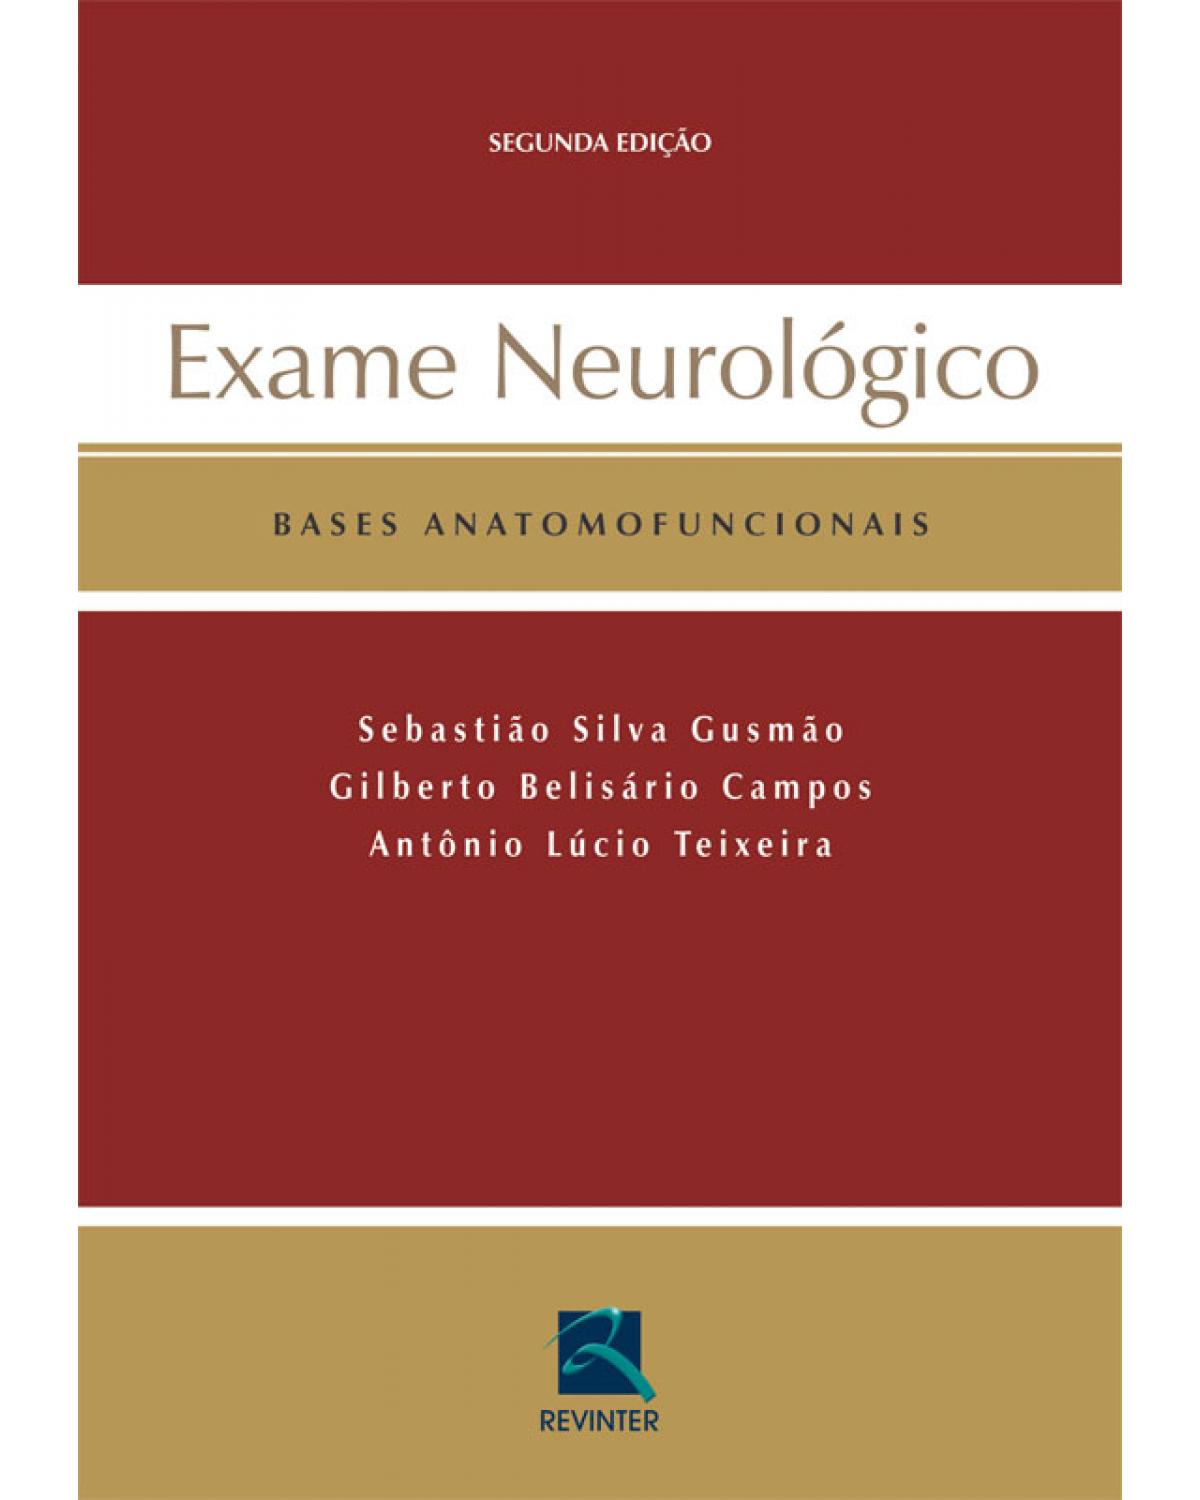 Exame neurológico - bases anatomofuncionais - 2ª Edição | 2007